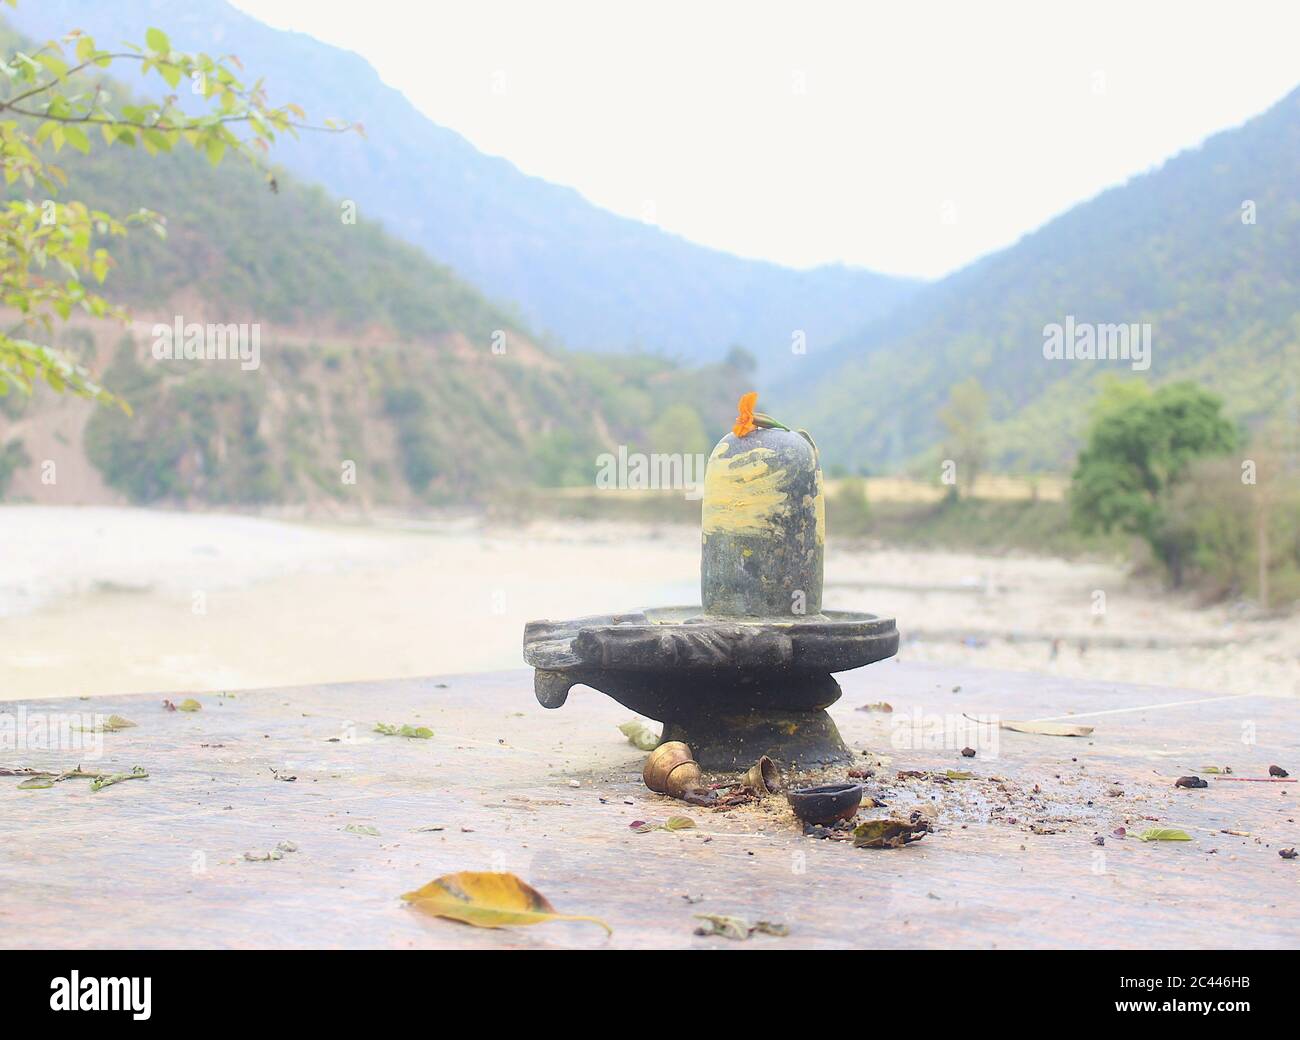 shiva Linga am Flussufer. Dieses Bild wurde in uttarakhand, indien aufgenommen. Stockfoto